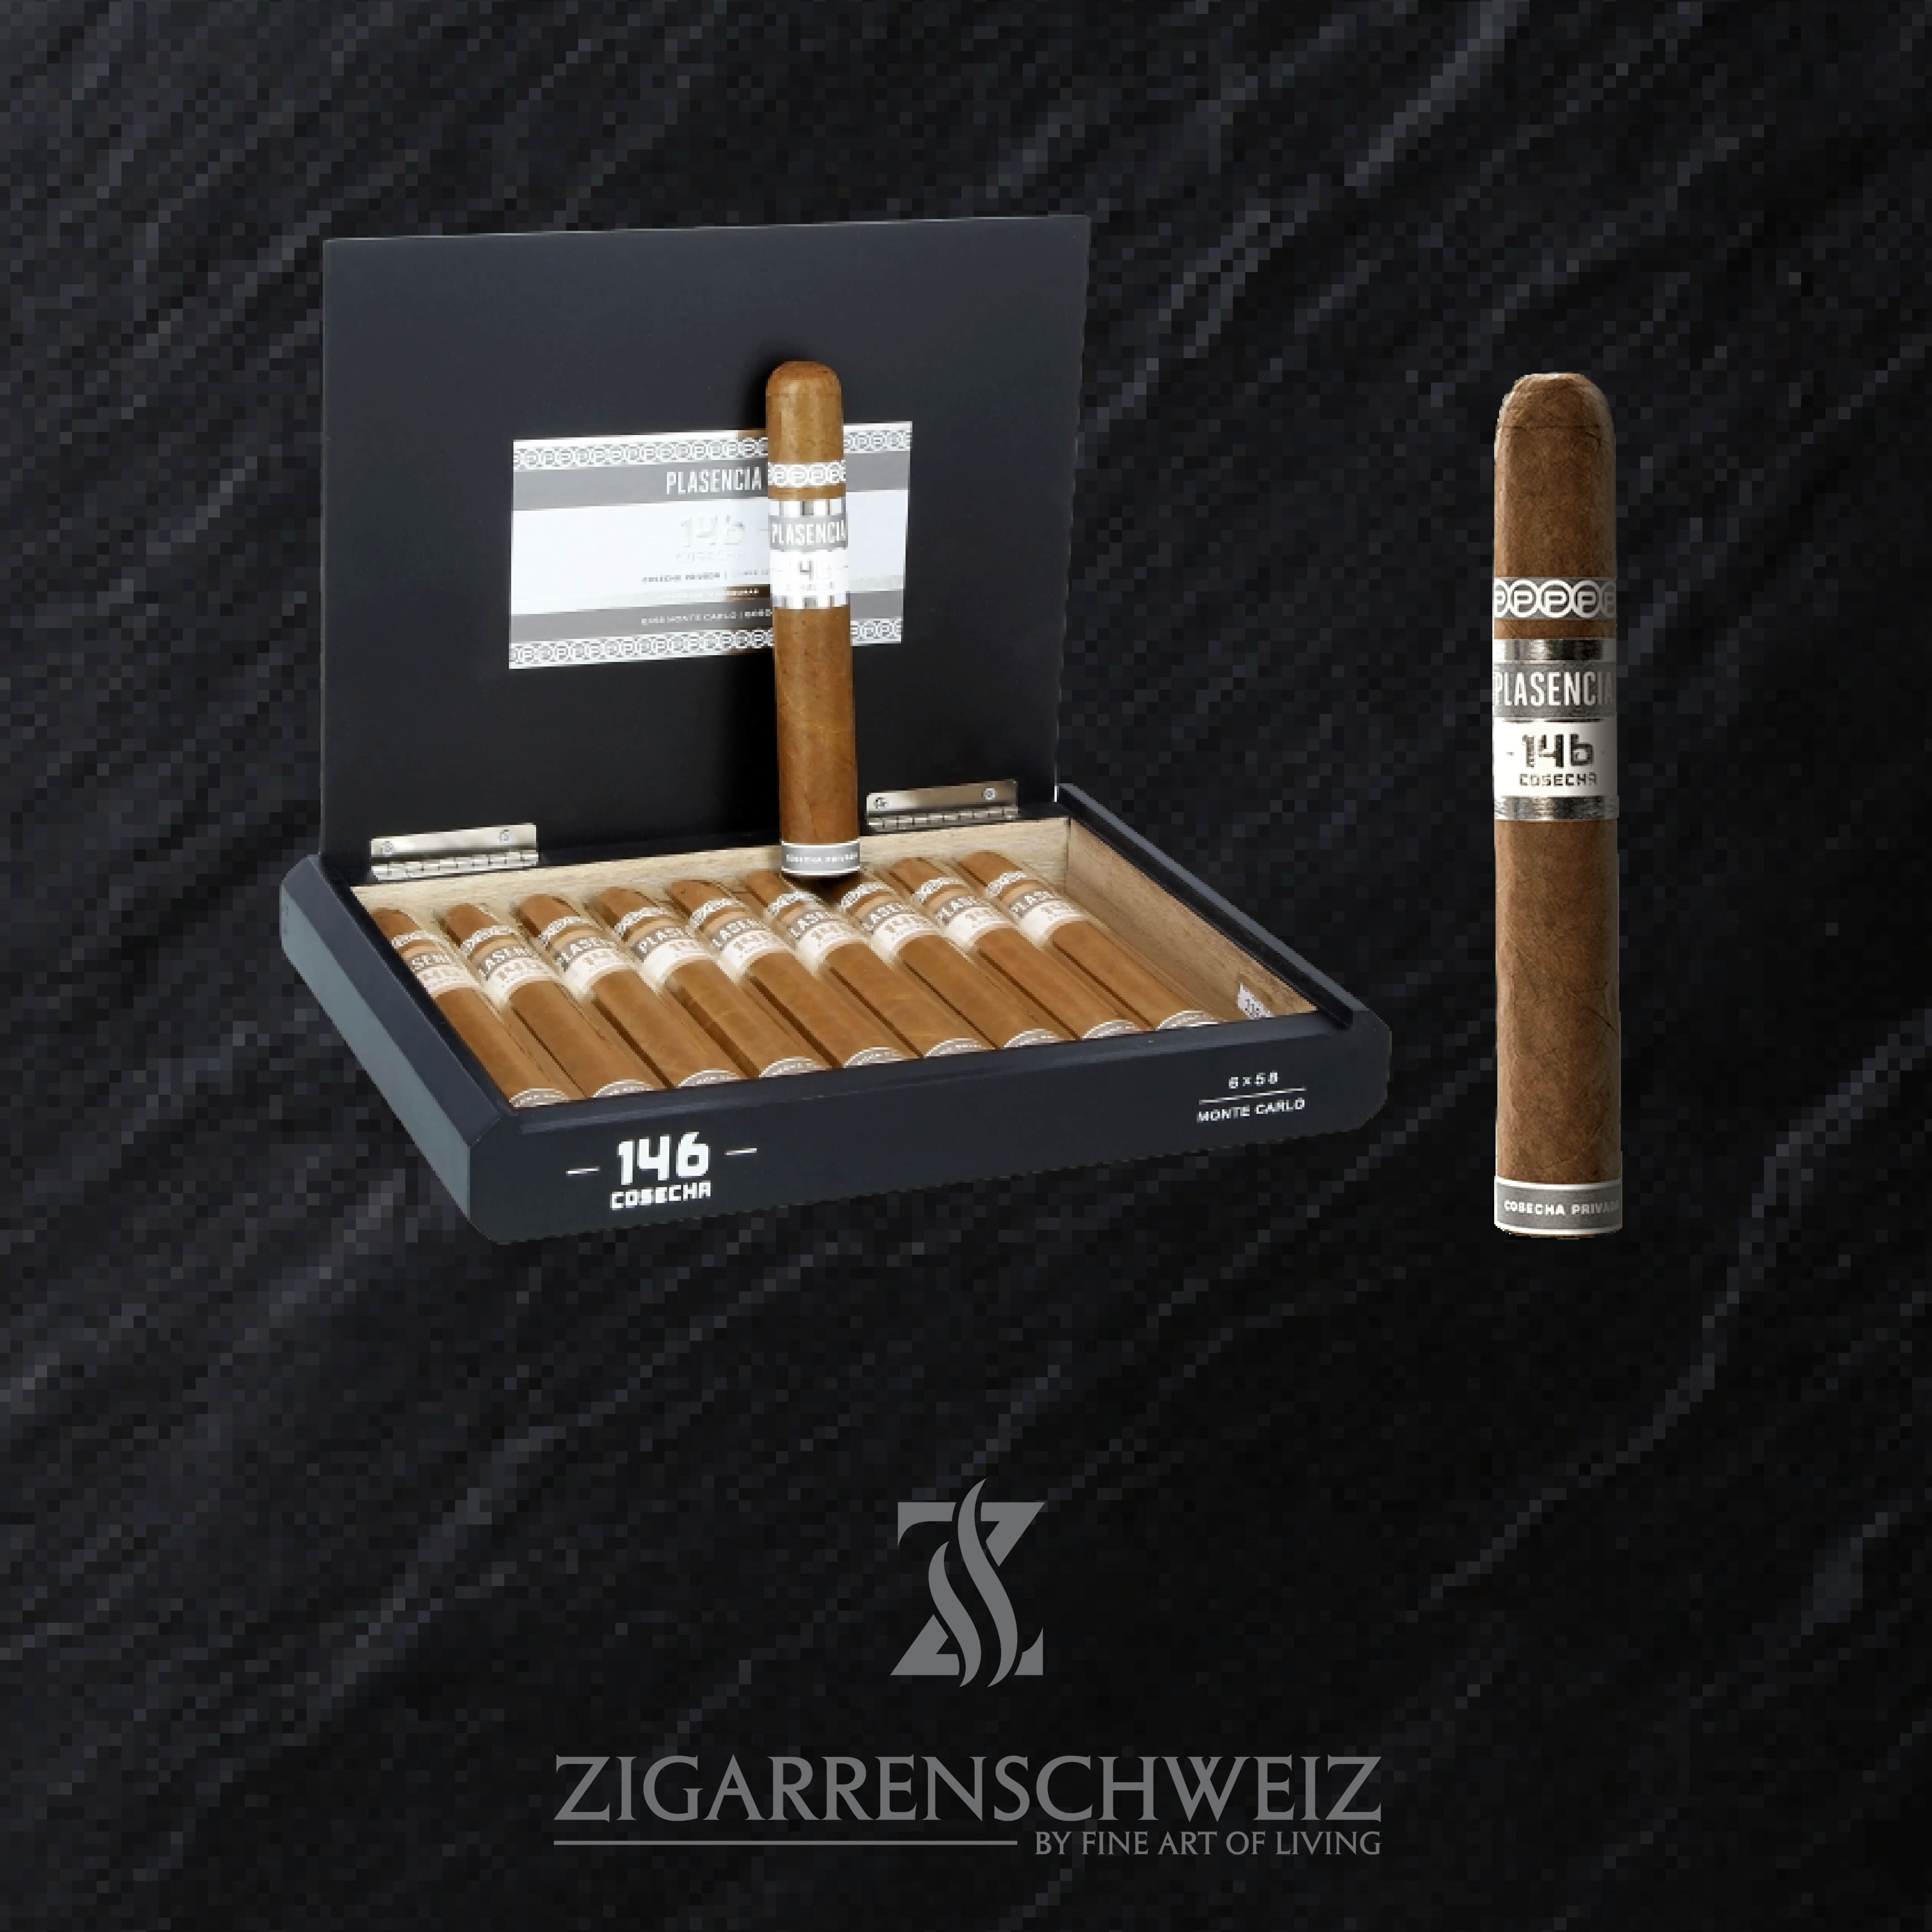 Pasencia Cosecha 146 Zigarren aus Honduras